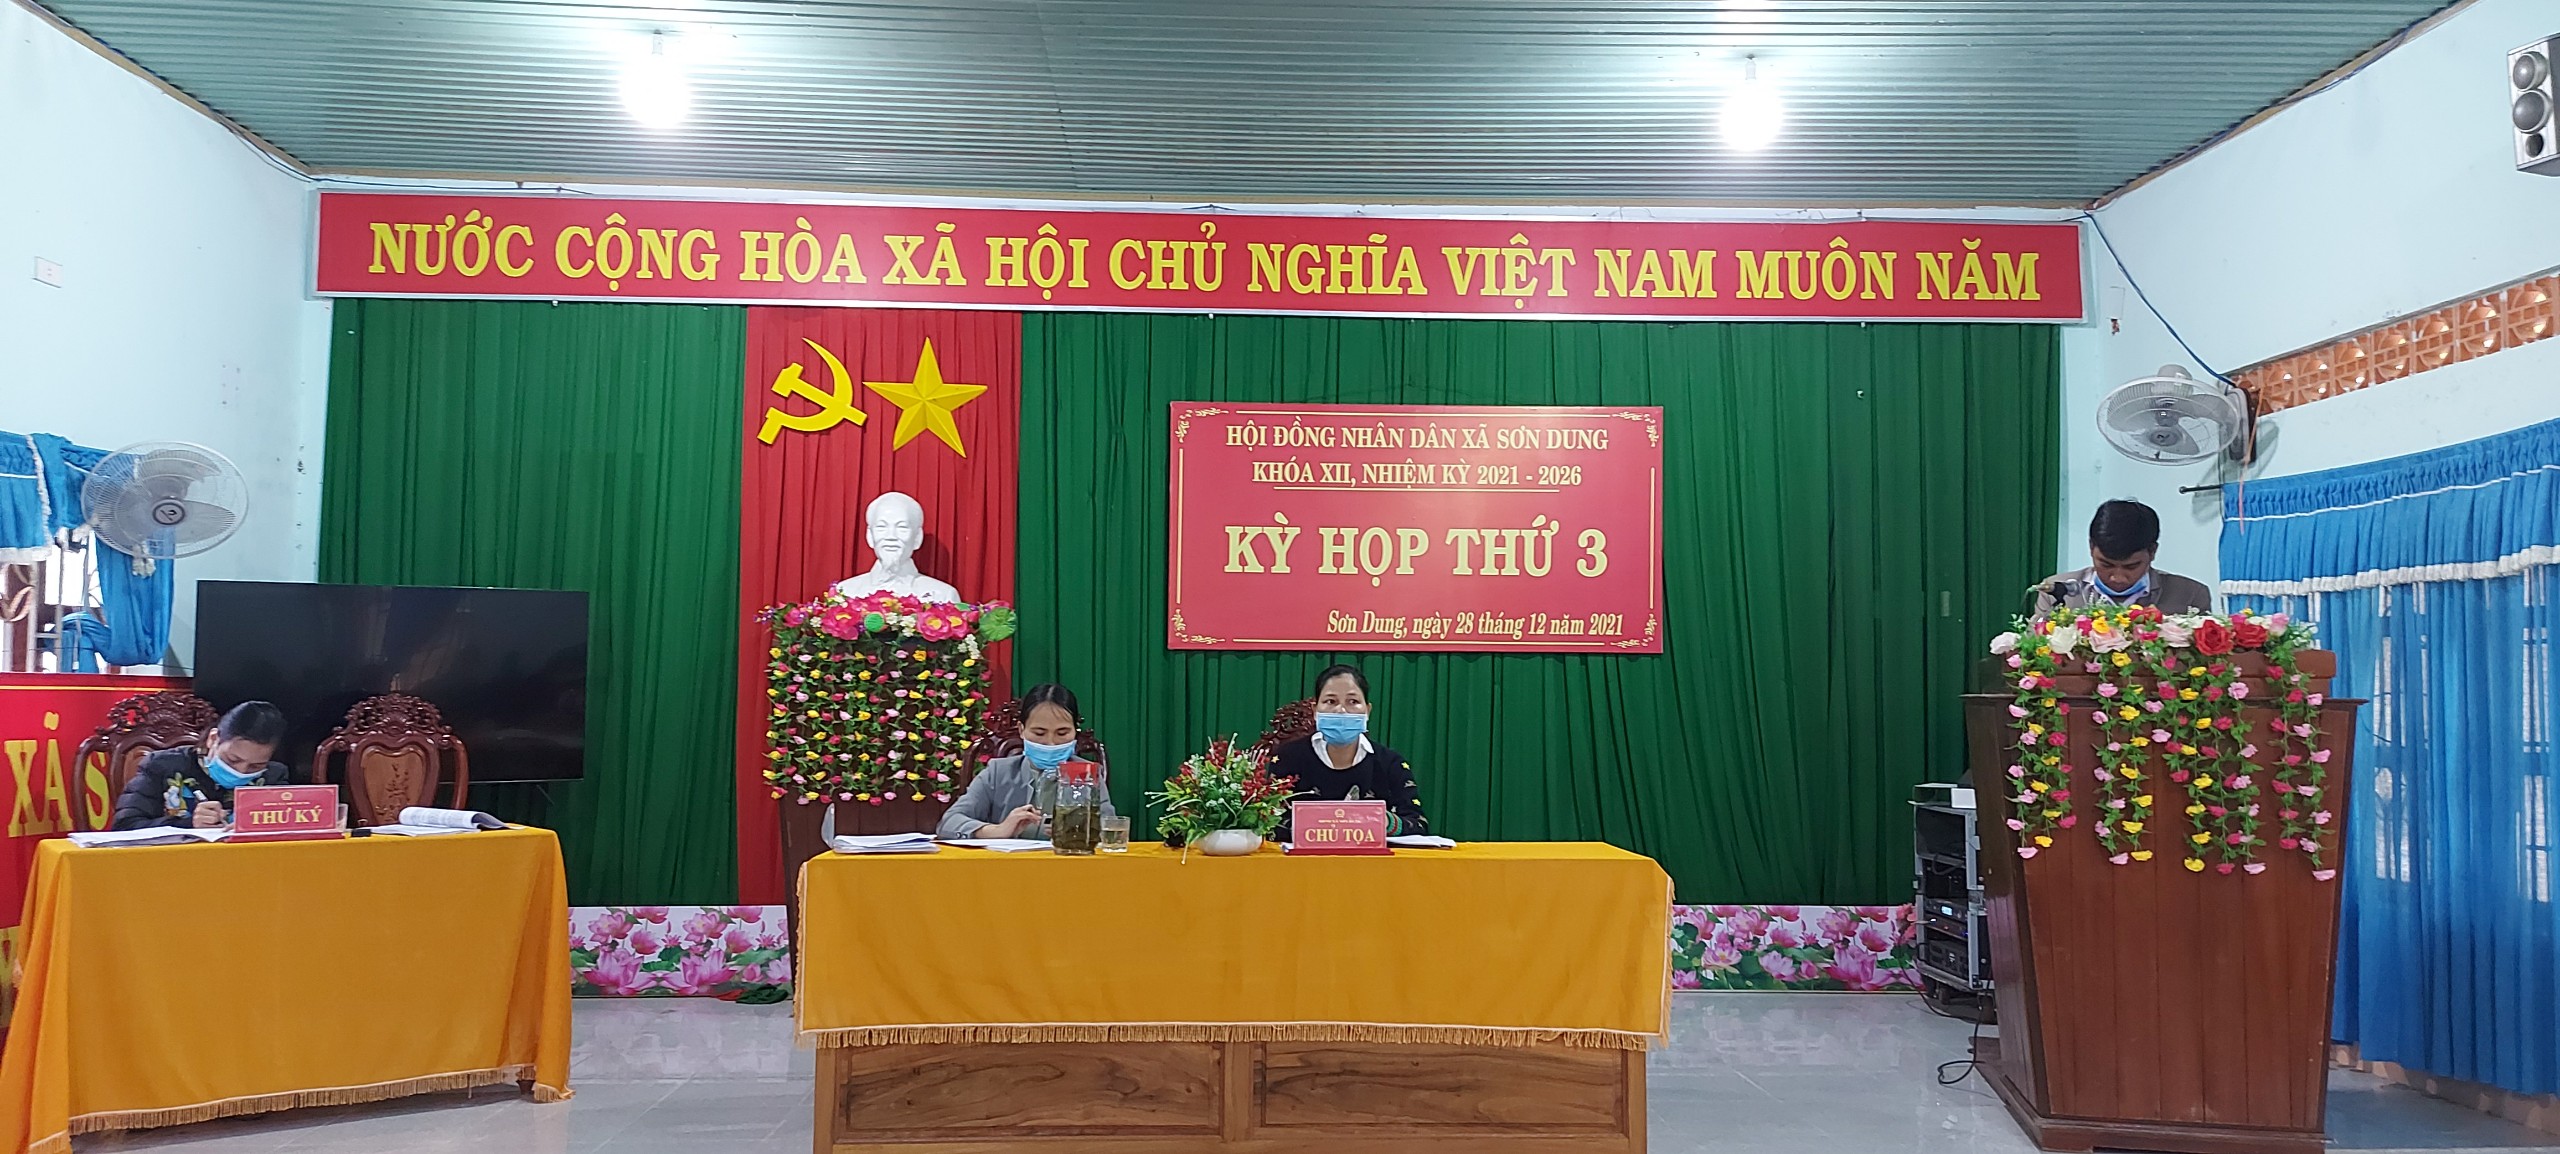 Hội đồng nhân dân xã Sơn Dung khóa XII, nhiệm kỳ 2021-2026 tổ chức kỳ họp thứ 3 (Kỳ họp cuối năm)